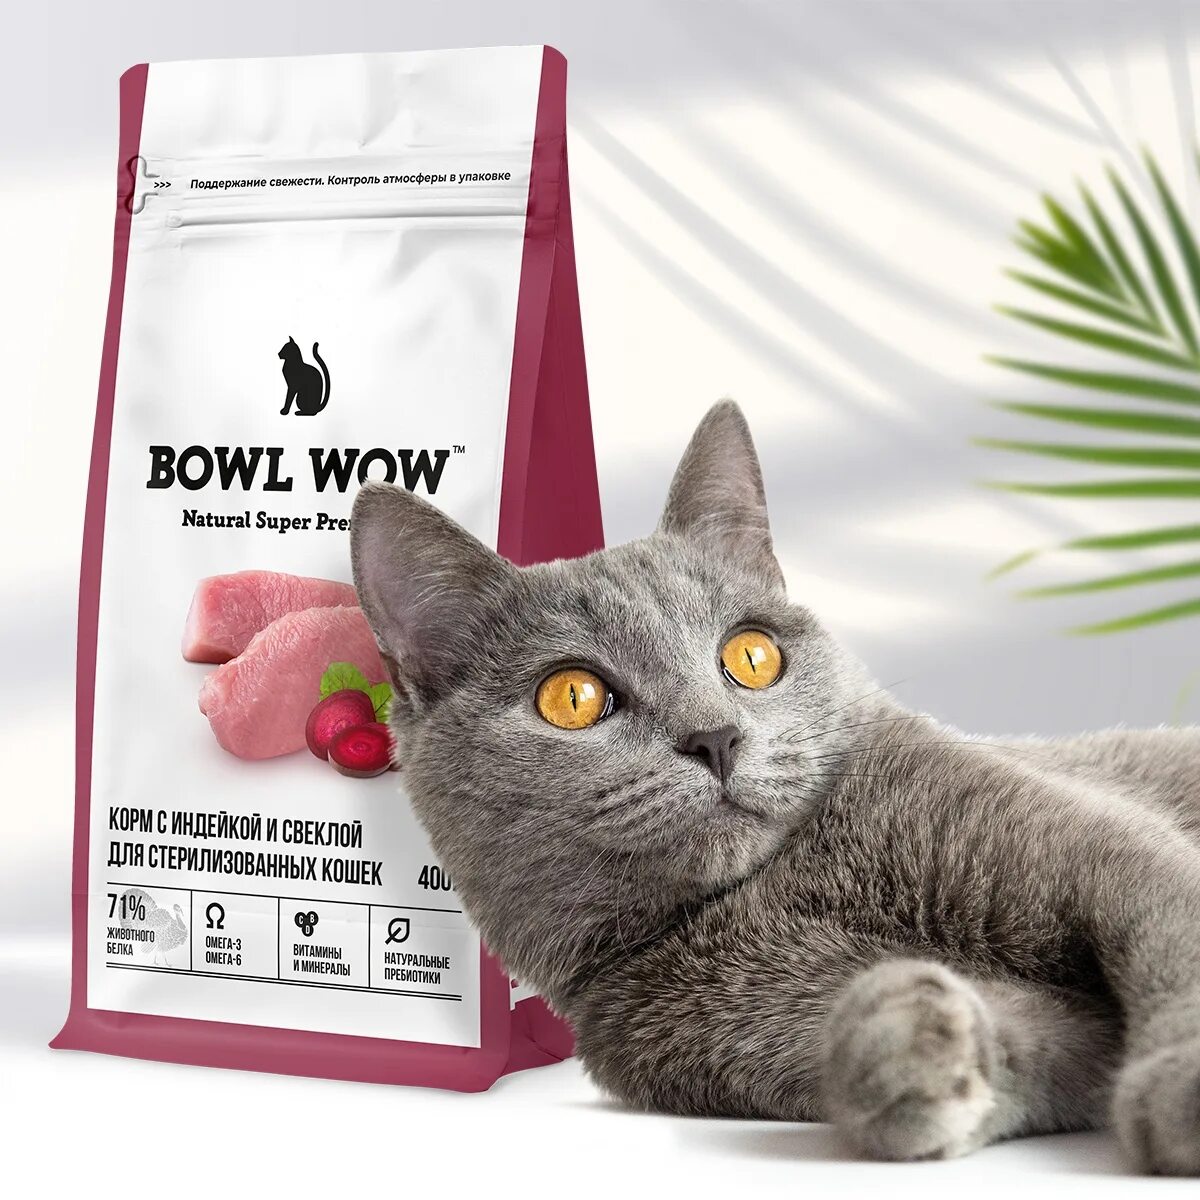 Bowl wow для кошек купить. Корм для кошек Bowl wow. Супер премиум корма для кошек. Корма для кошек российского производства супер премиум. Bowl wow для кошек.